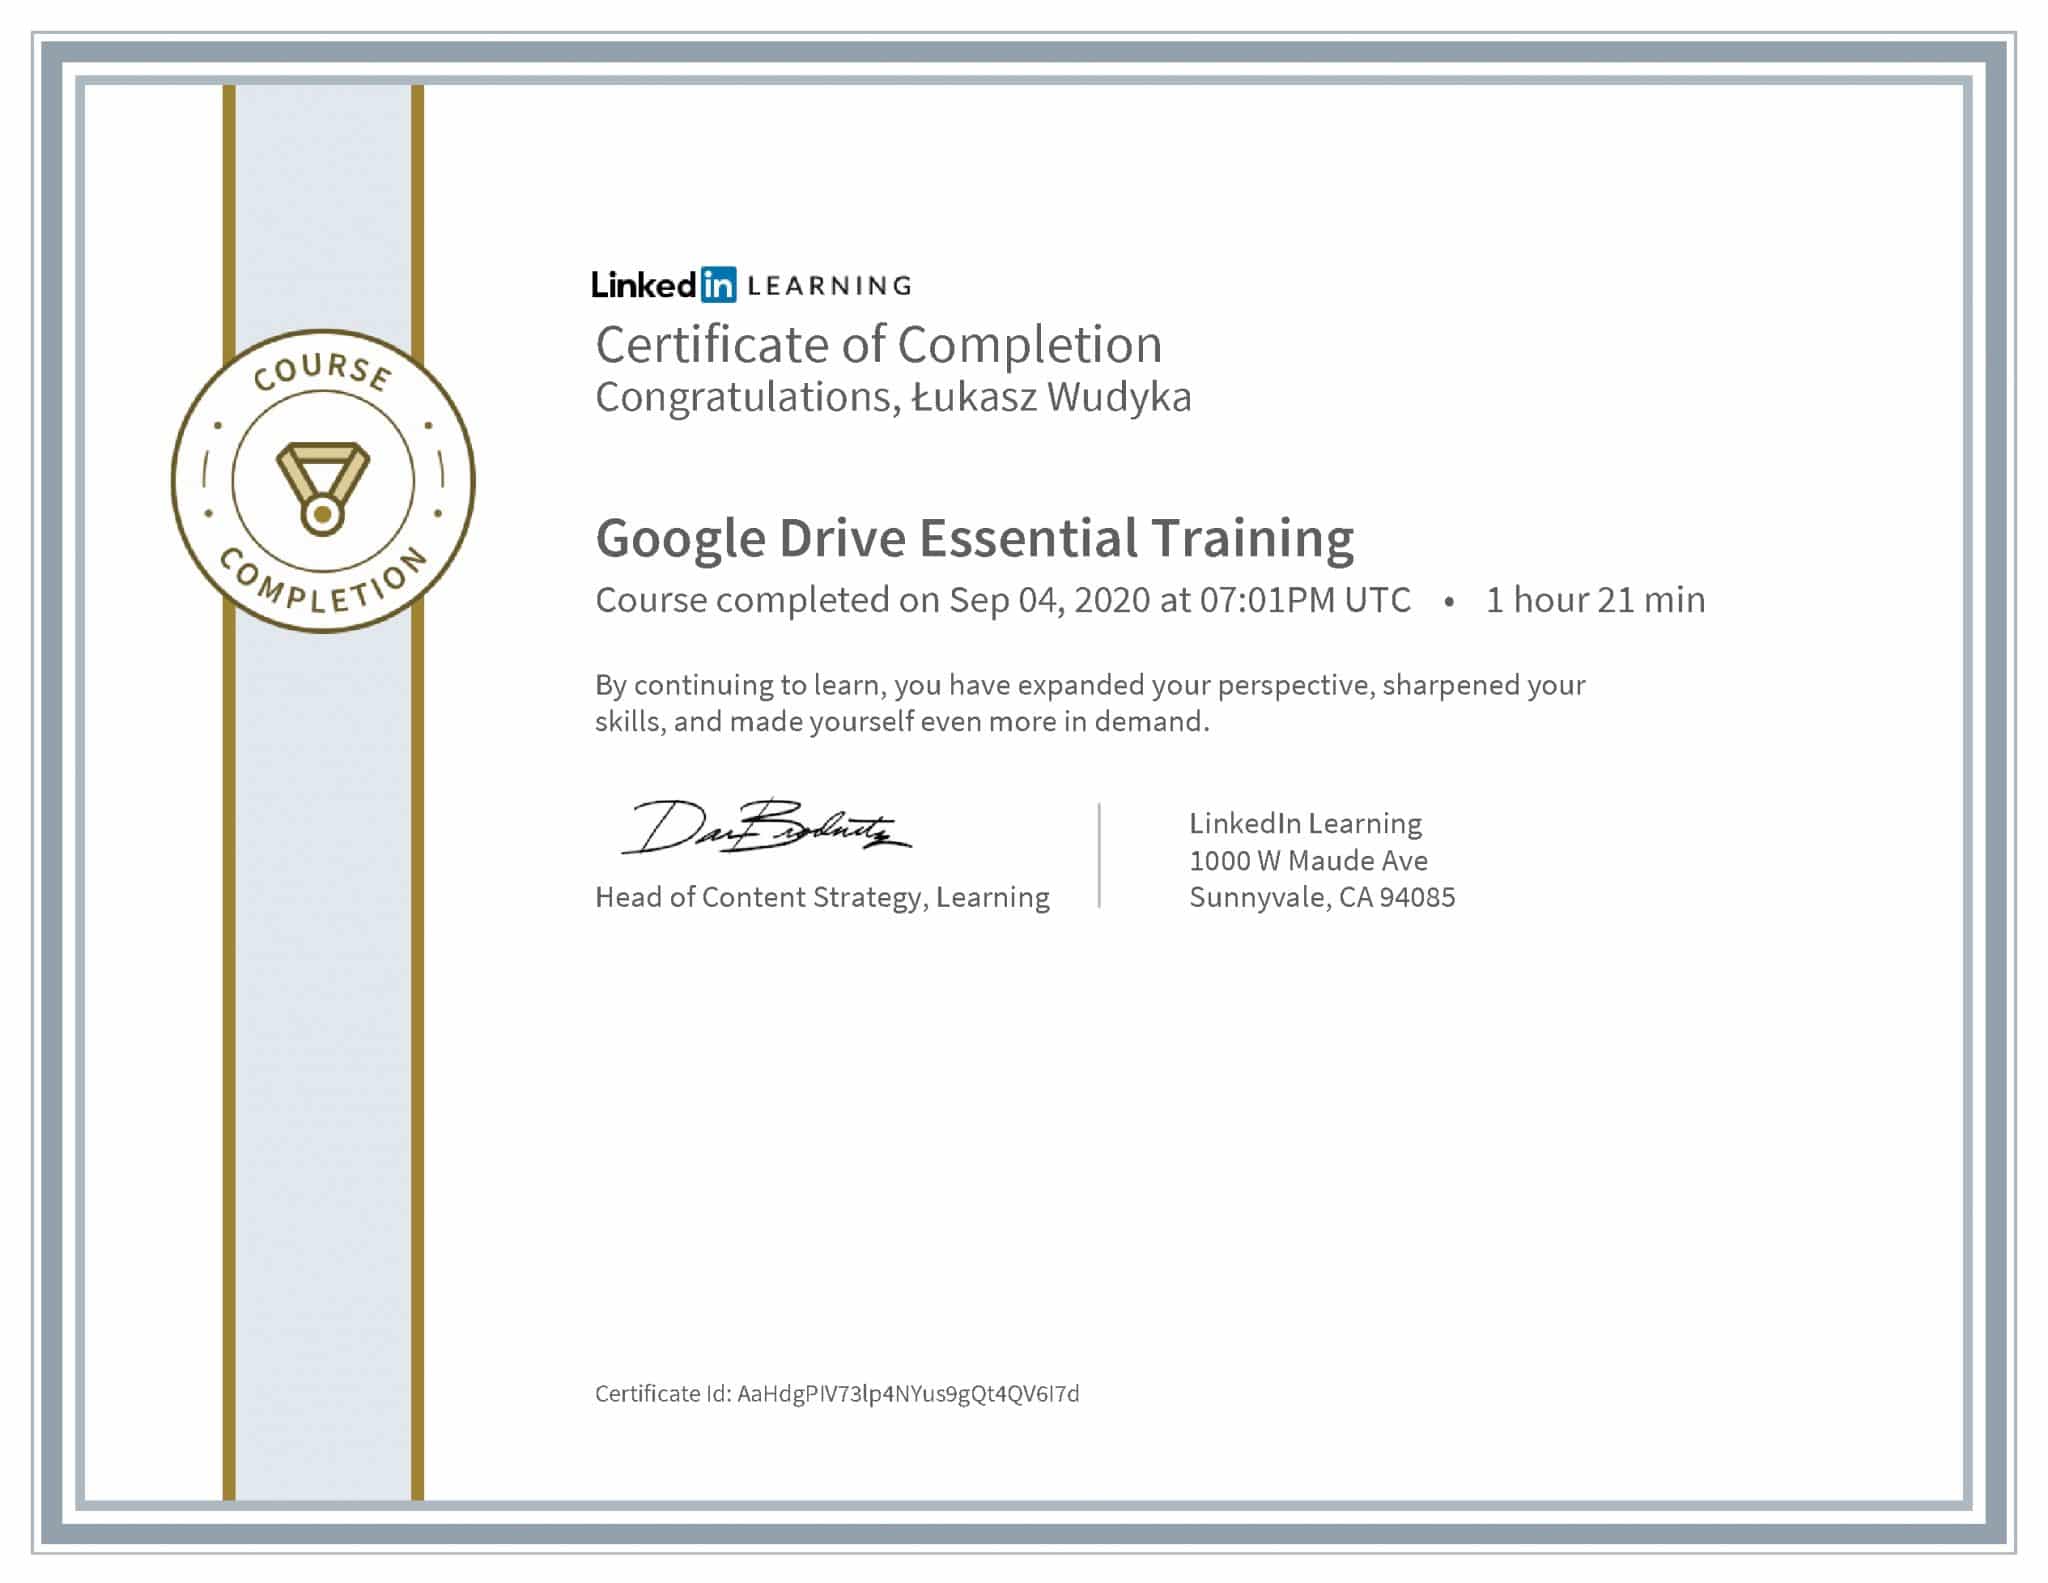 Łukasz Wudyka certyfikat LinkedIn Google Drive Essential Training